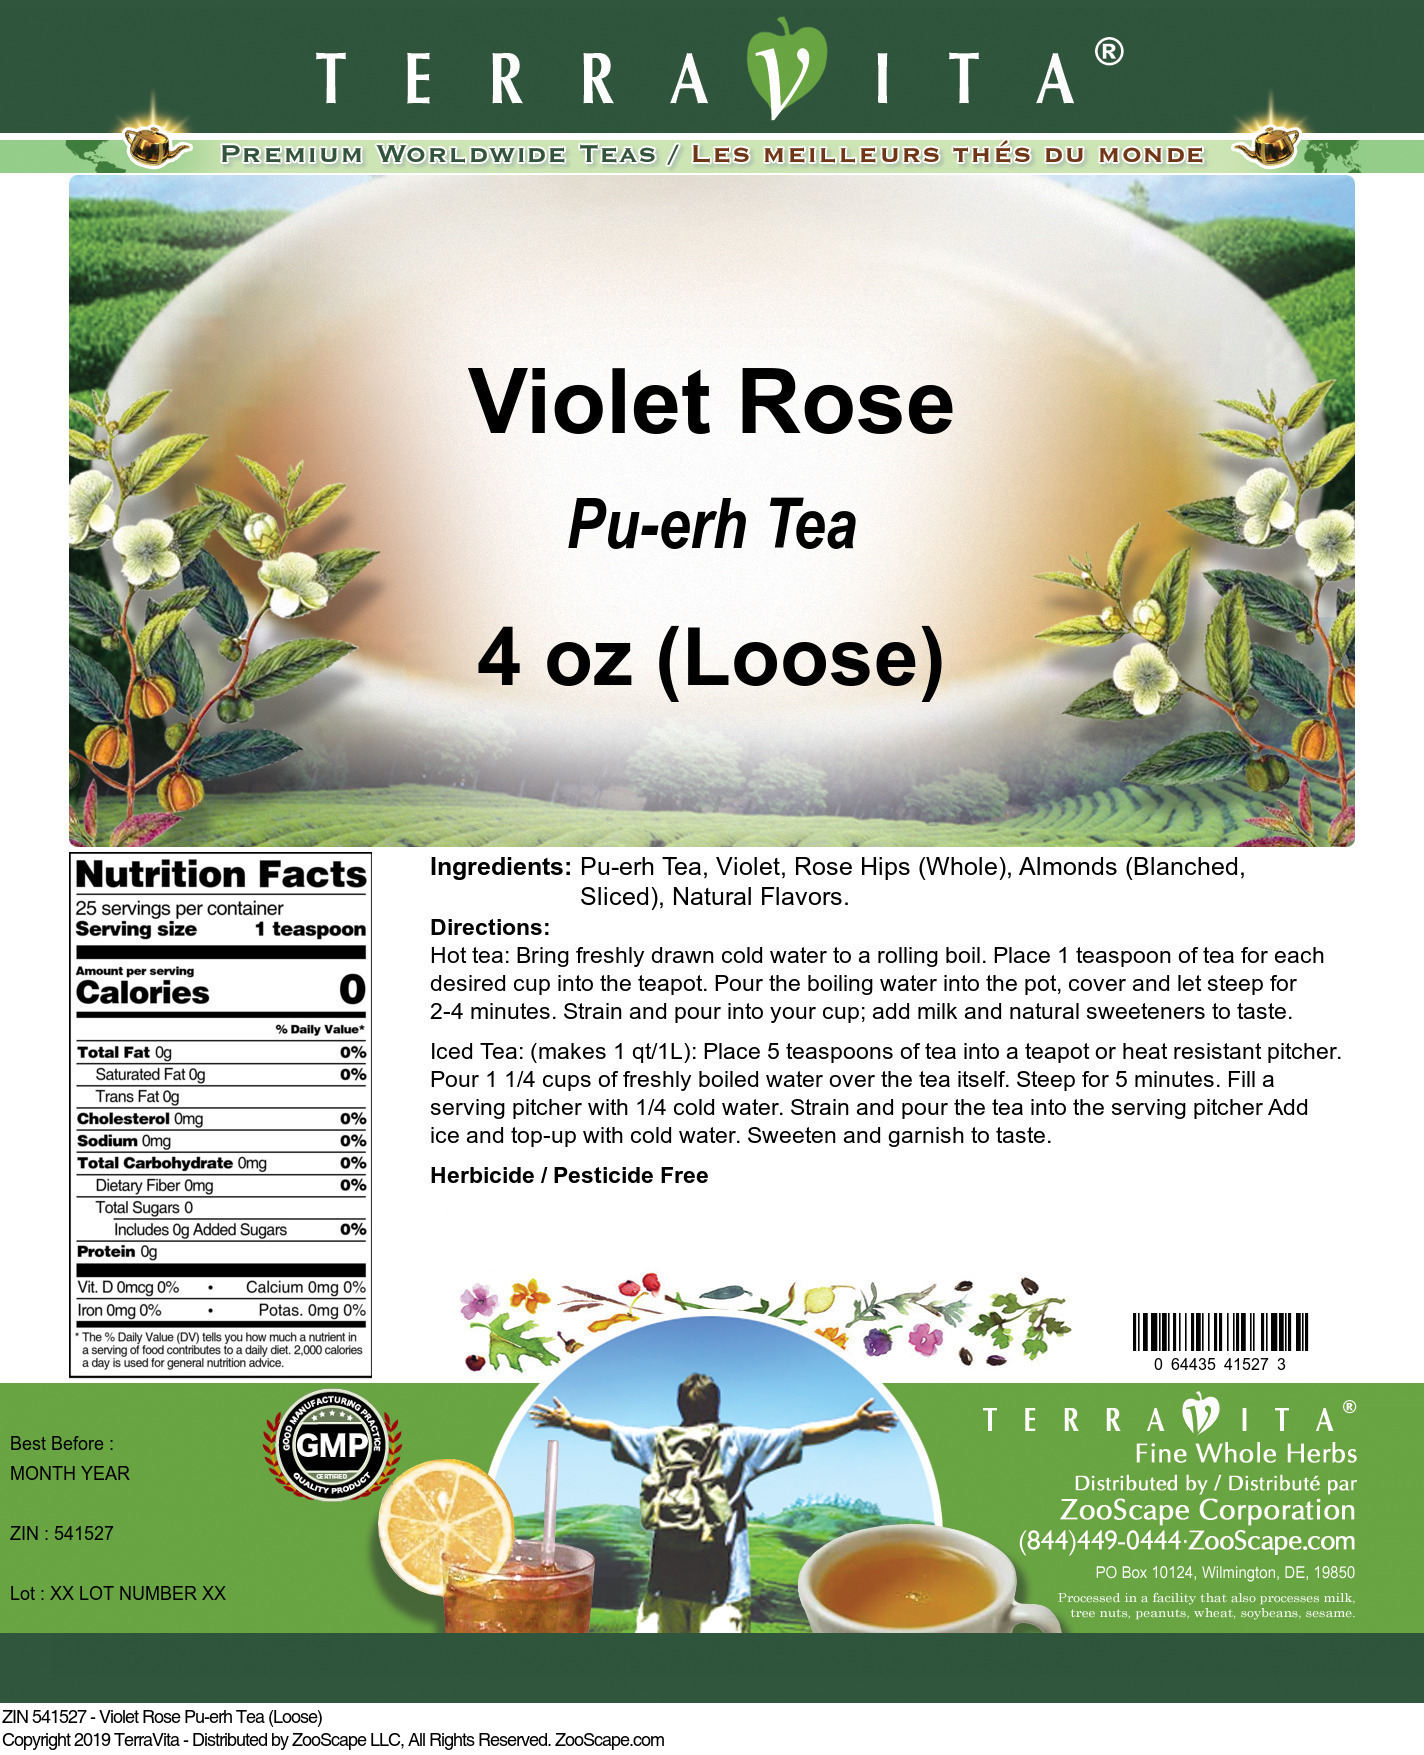 Violet Rose Pu-erh Tea (Loose) - Label